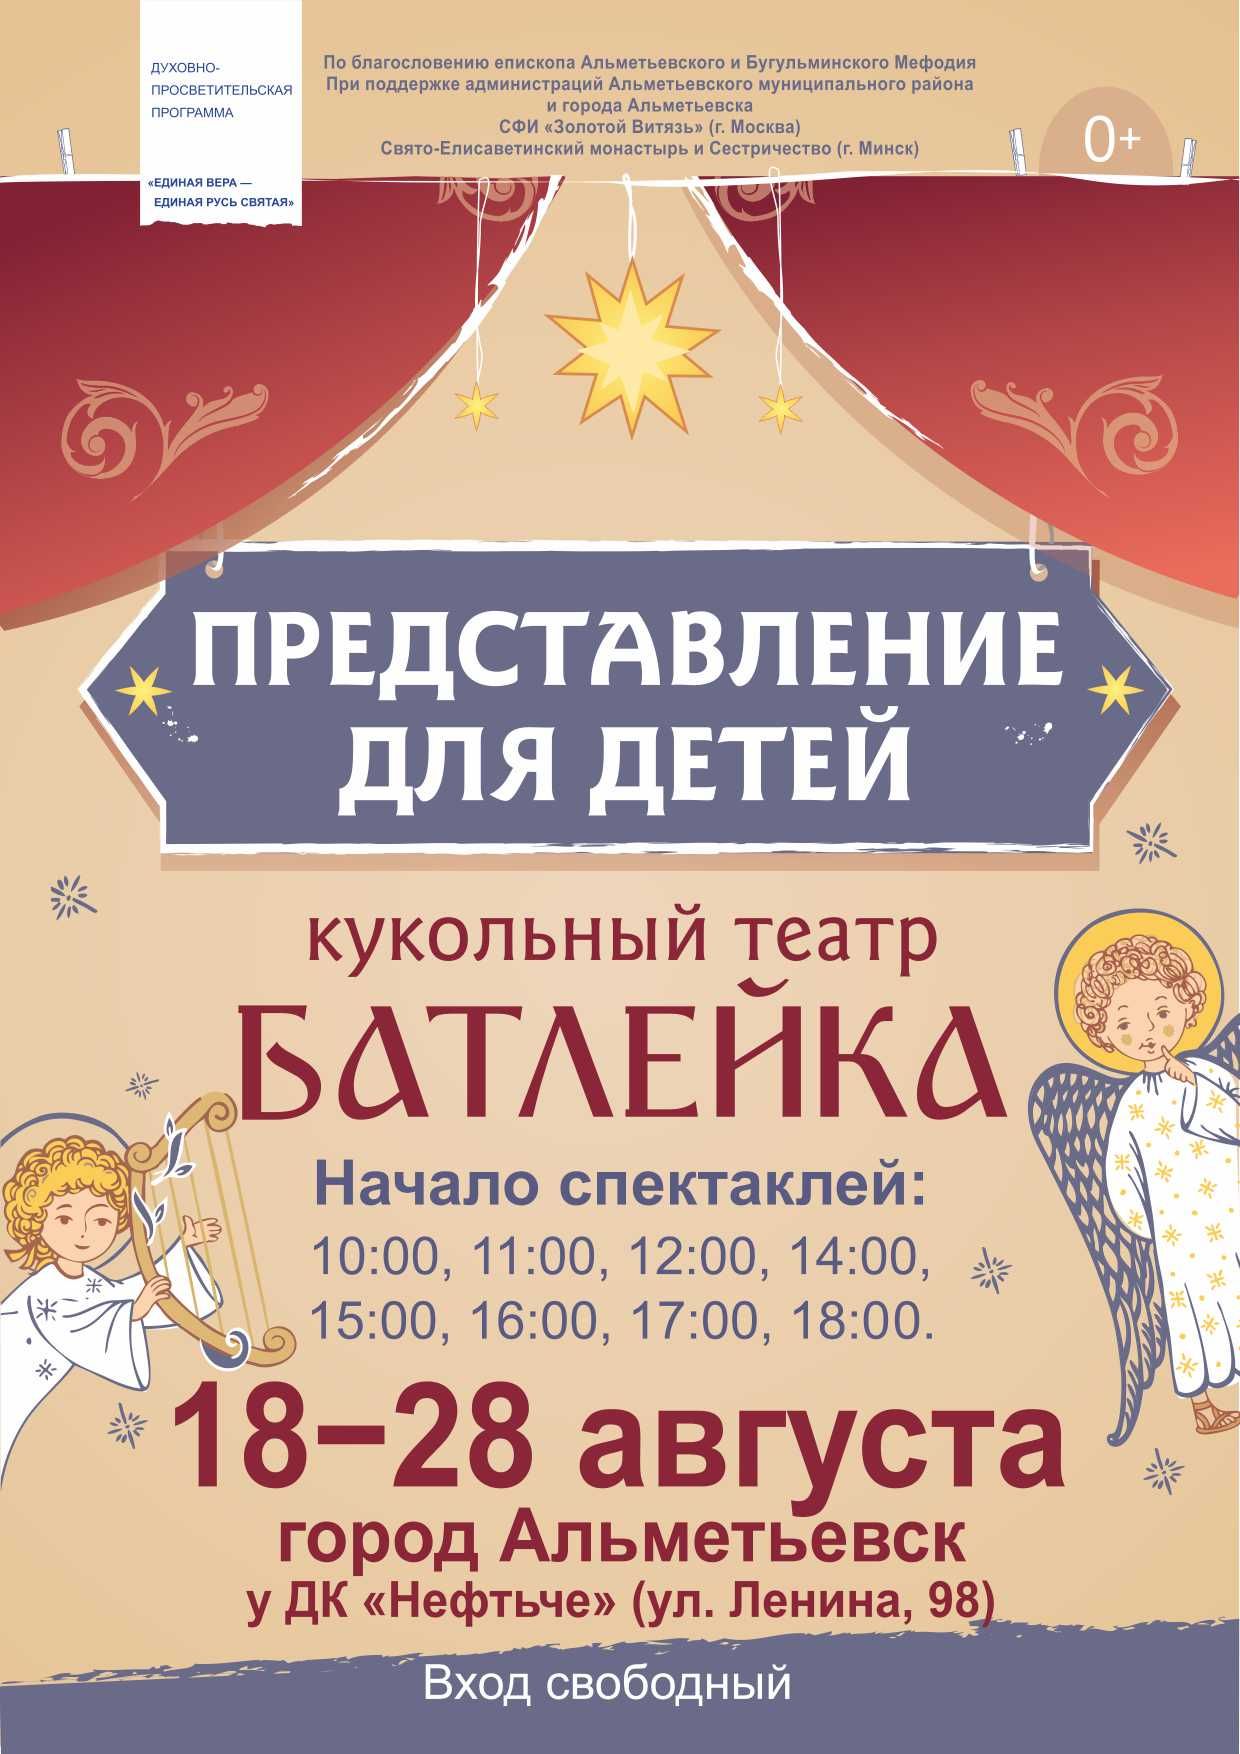 Праздник радости и добра: духовно-просветительская программа «Единая вера – единая Русь святая» состоится в Альметьевске&nbsp;